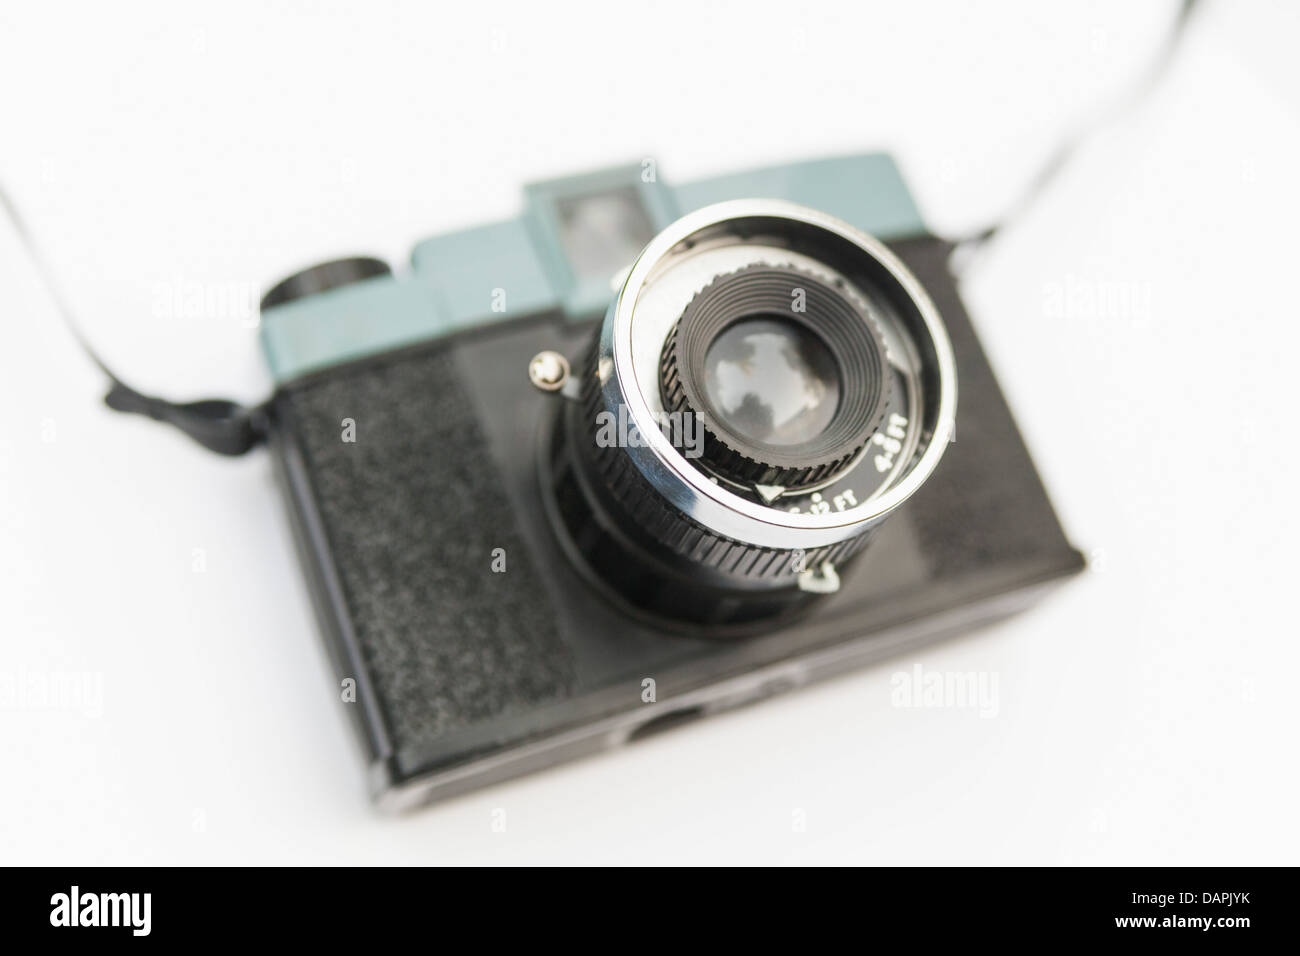 Analog plastic camera on white background, close up Stock Photo